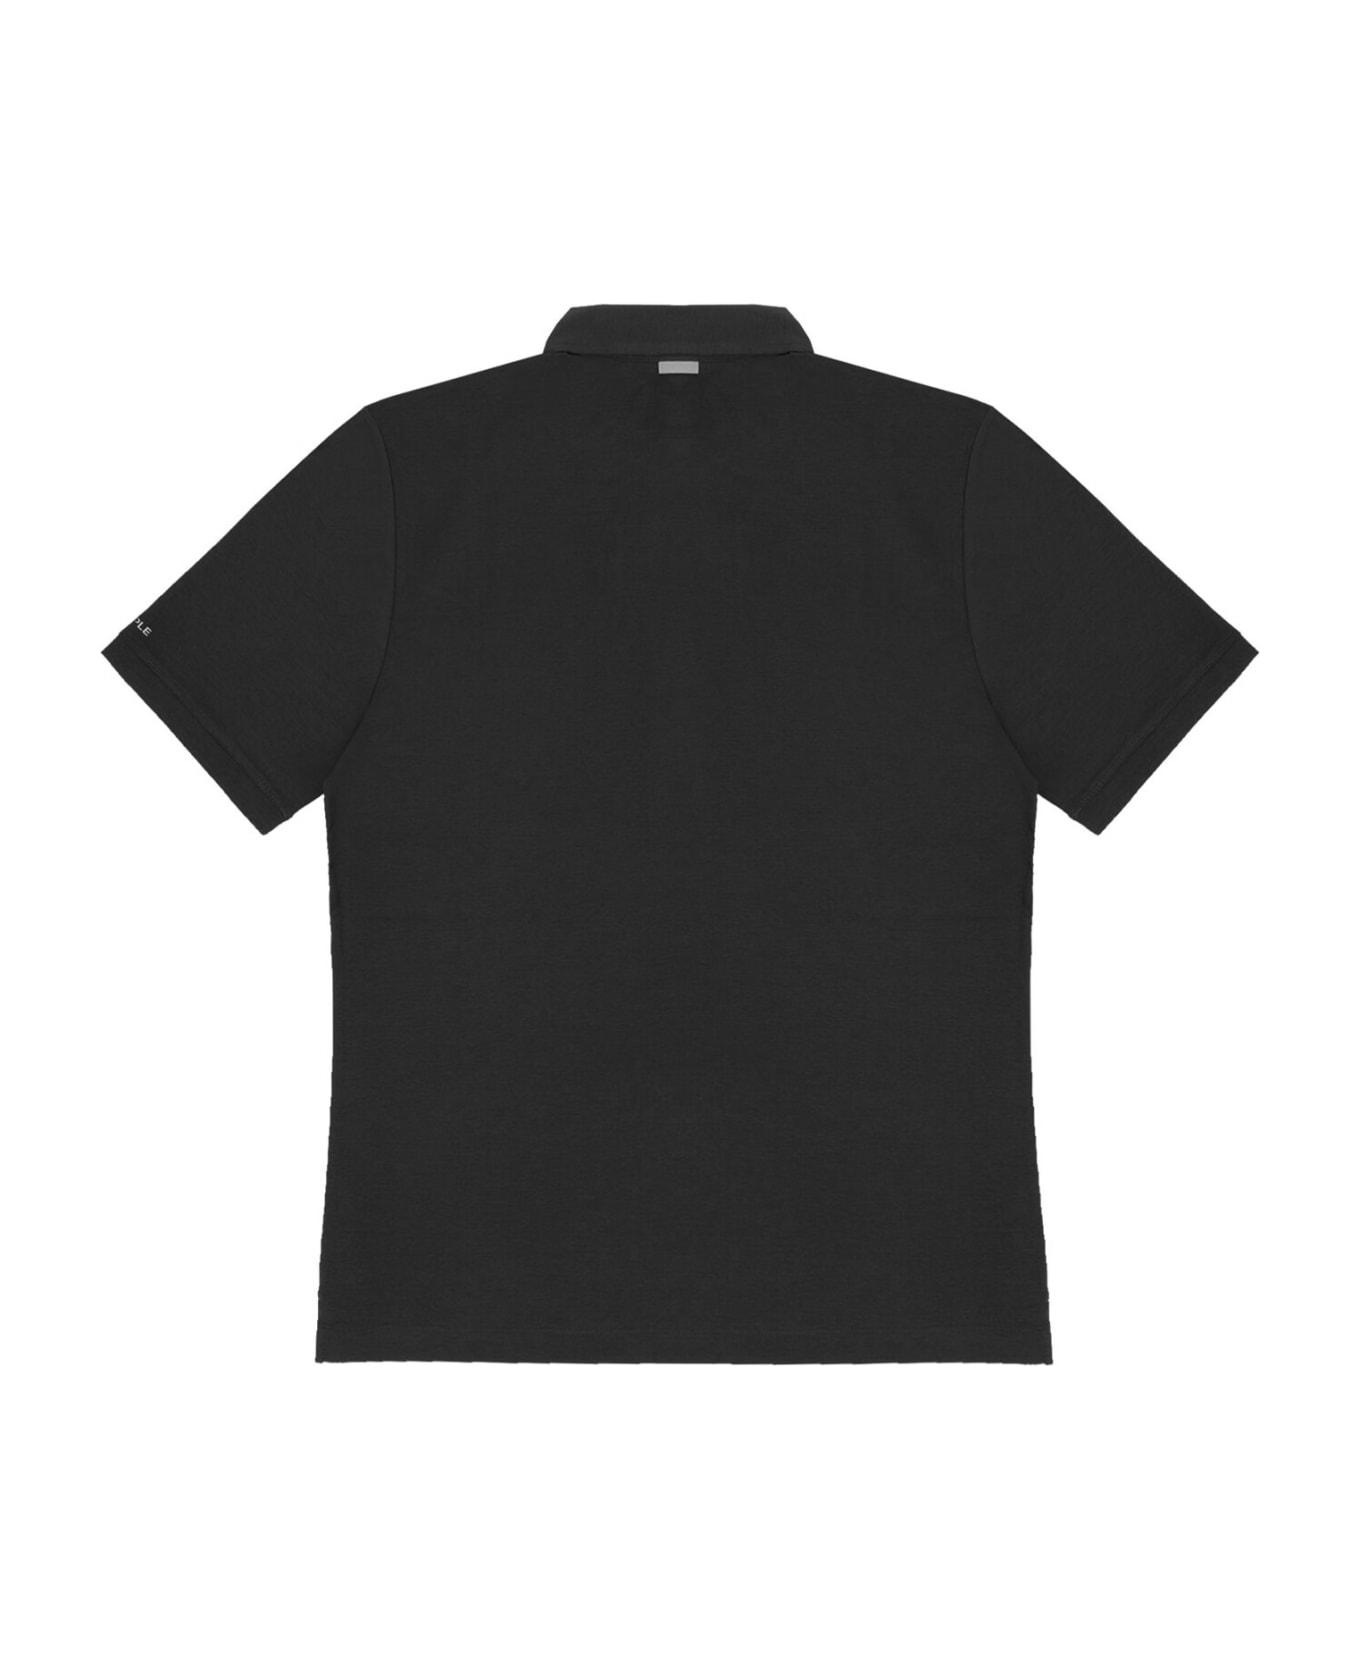 People Of Shibuya Black Short-sleeved Polo Shirt - NERO ポロシャツ